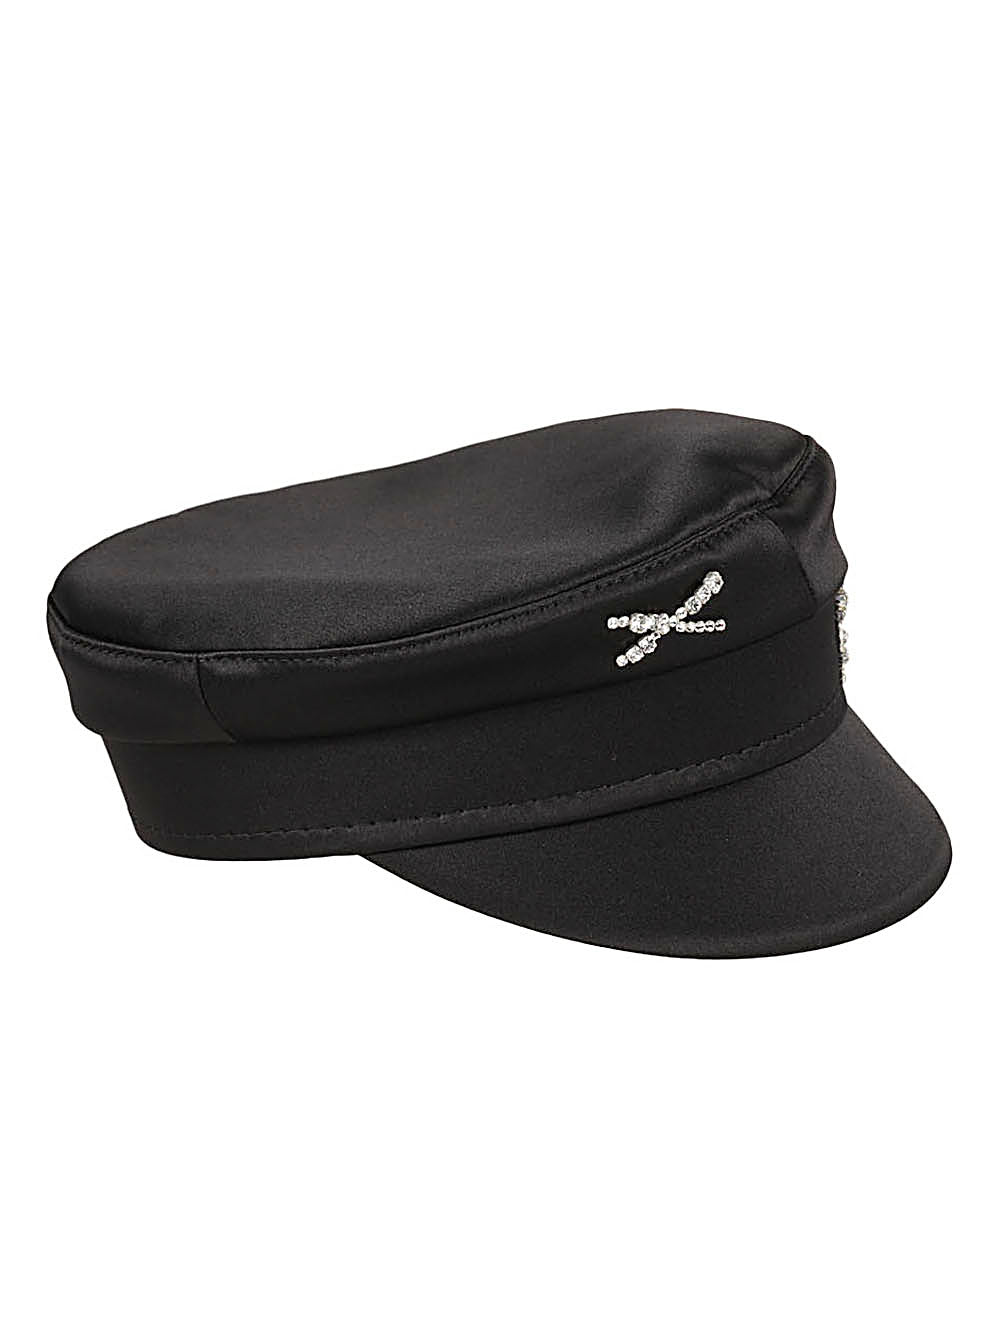 Ruslan Baginskiy Hats Black-women > accessories > scarves hats & gloves-Ruslan Baginskiy-Urbanheer